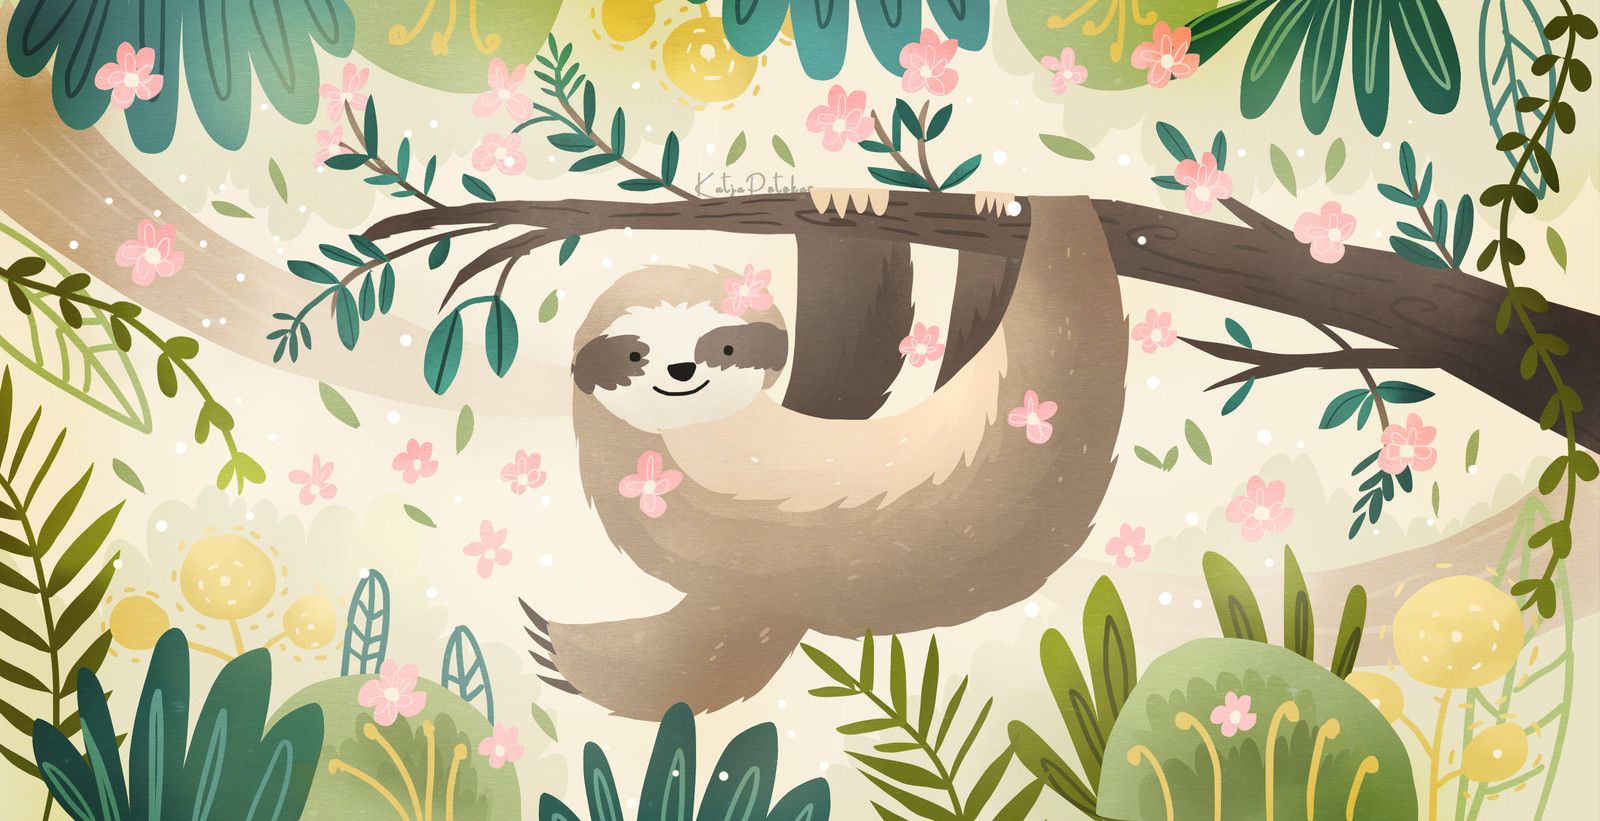 Spring Sloth Artwork XLEER. Sloth Art, Sloth, Artwork